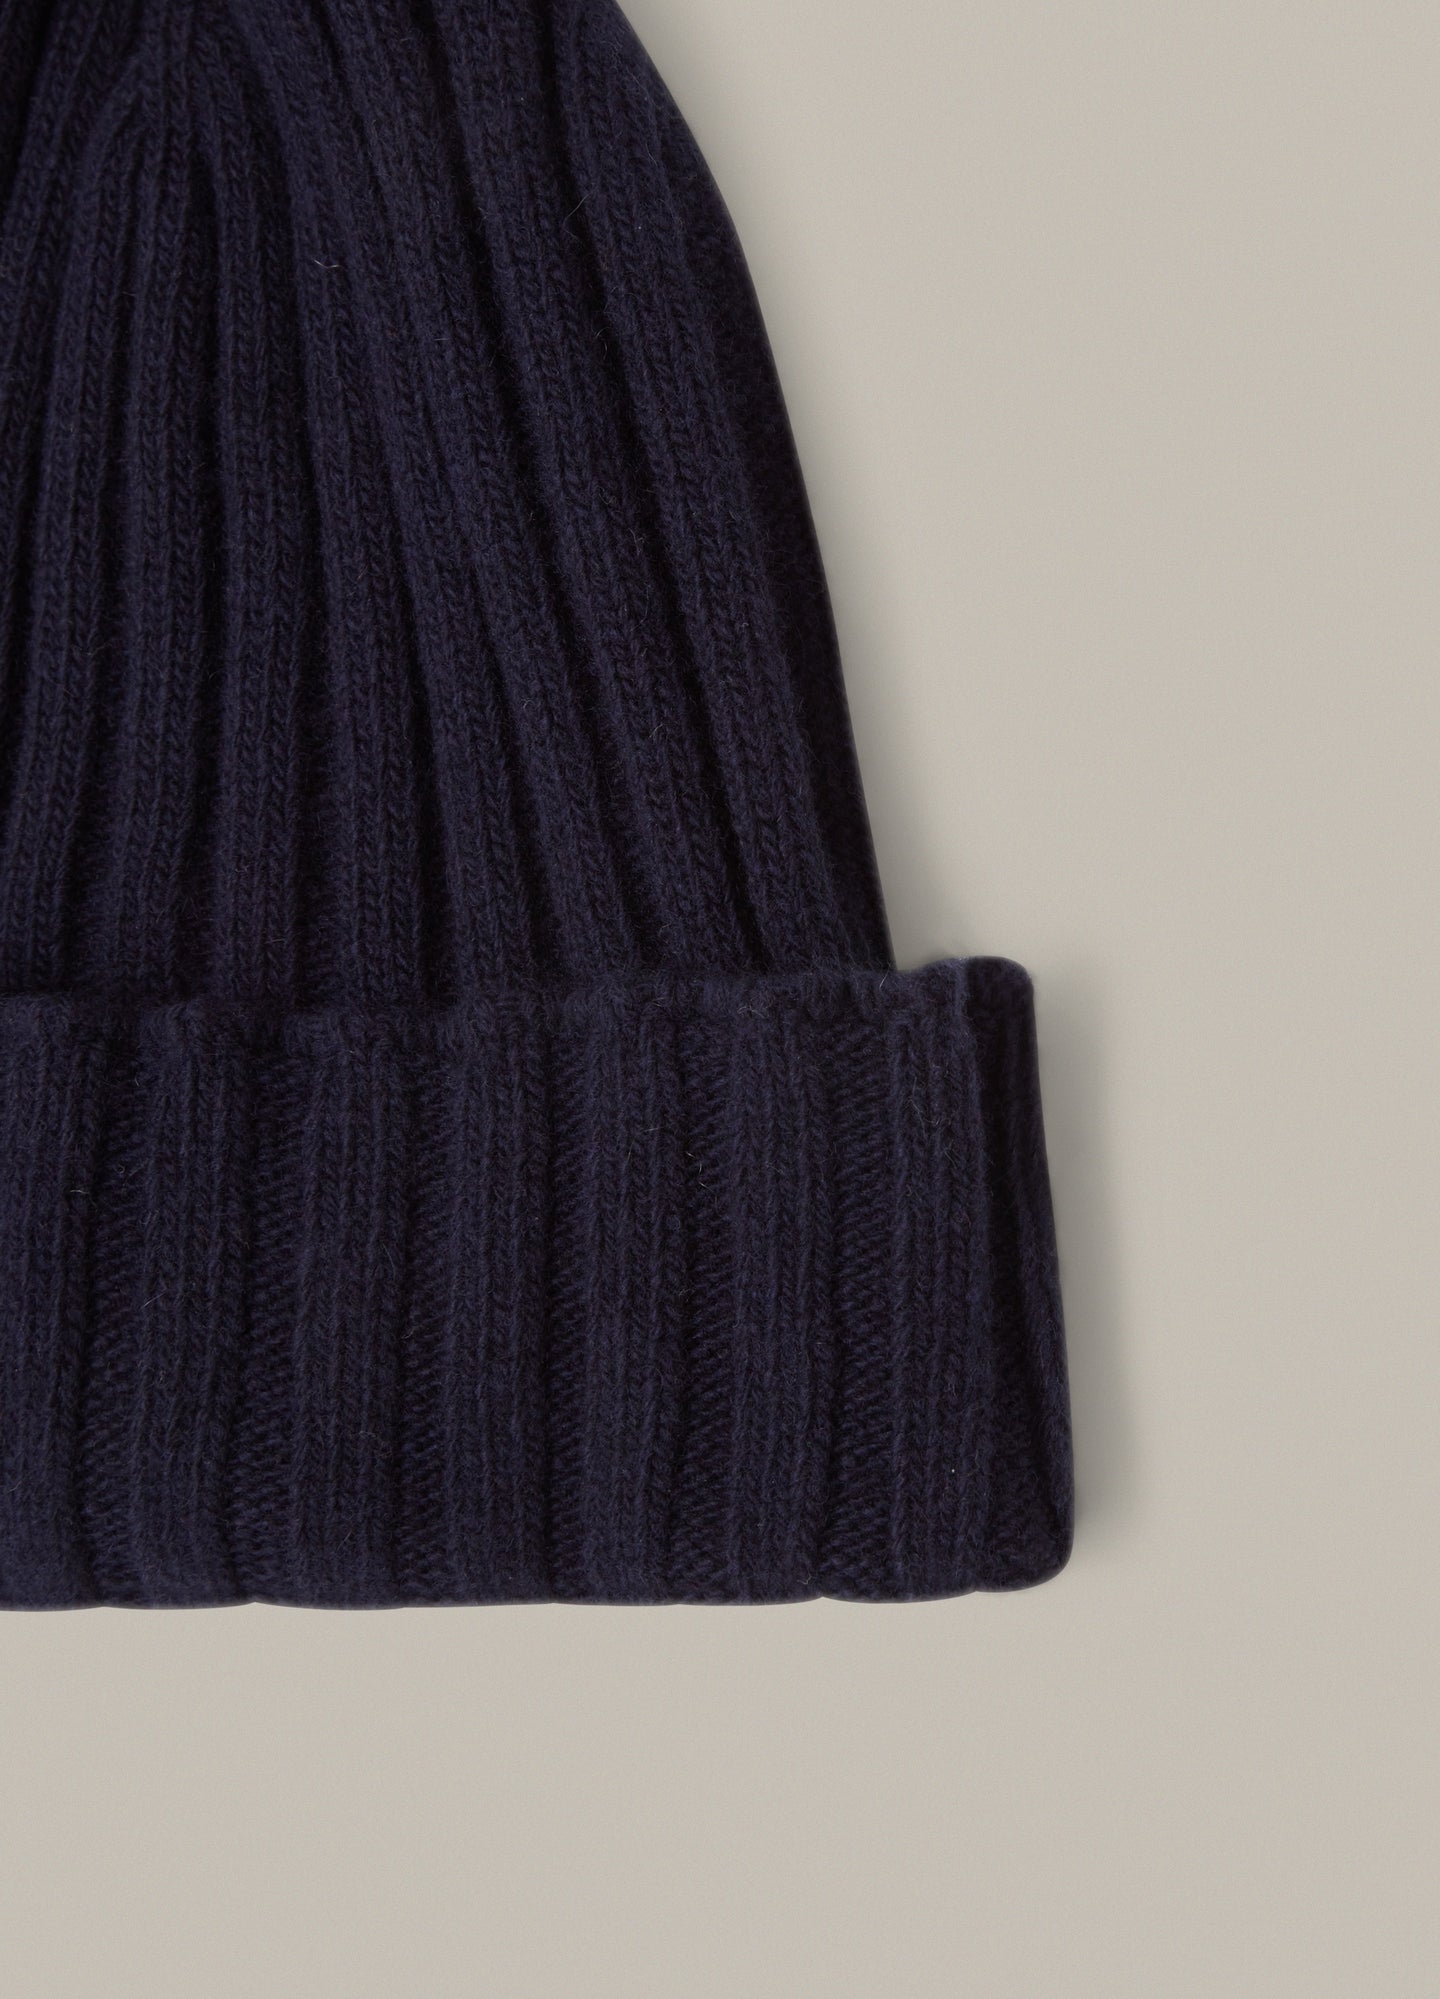 Merino/Cashmere Knit Hat - Navy Berg & Berg